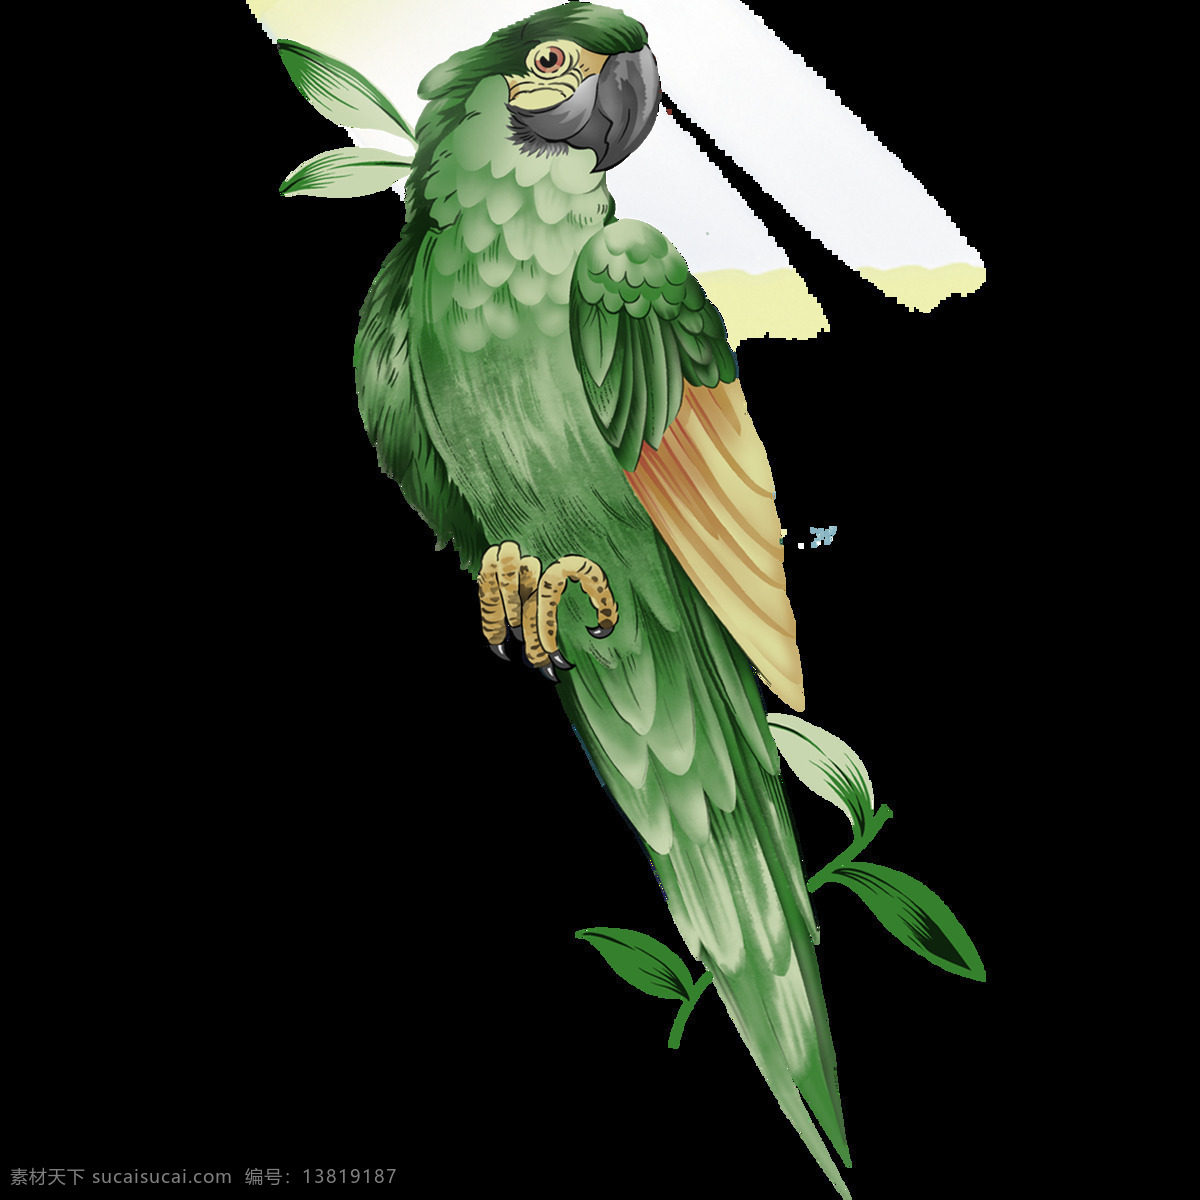 唯美 绿色 鸟儿 绘画 美观 鲜明 逼真 鹦鹉形象 生动